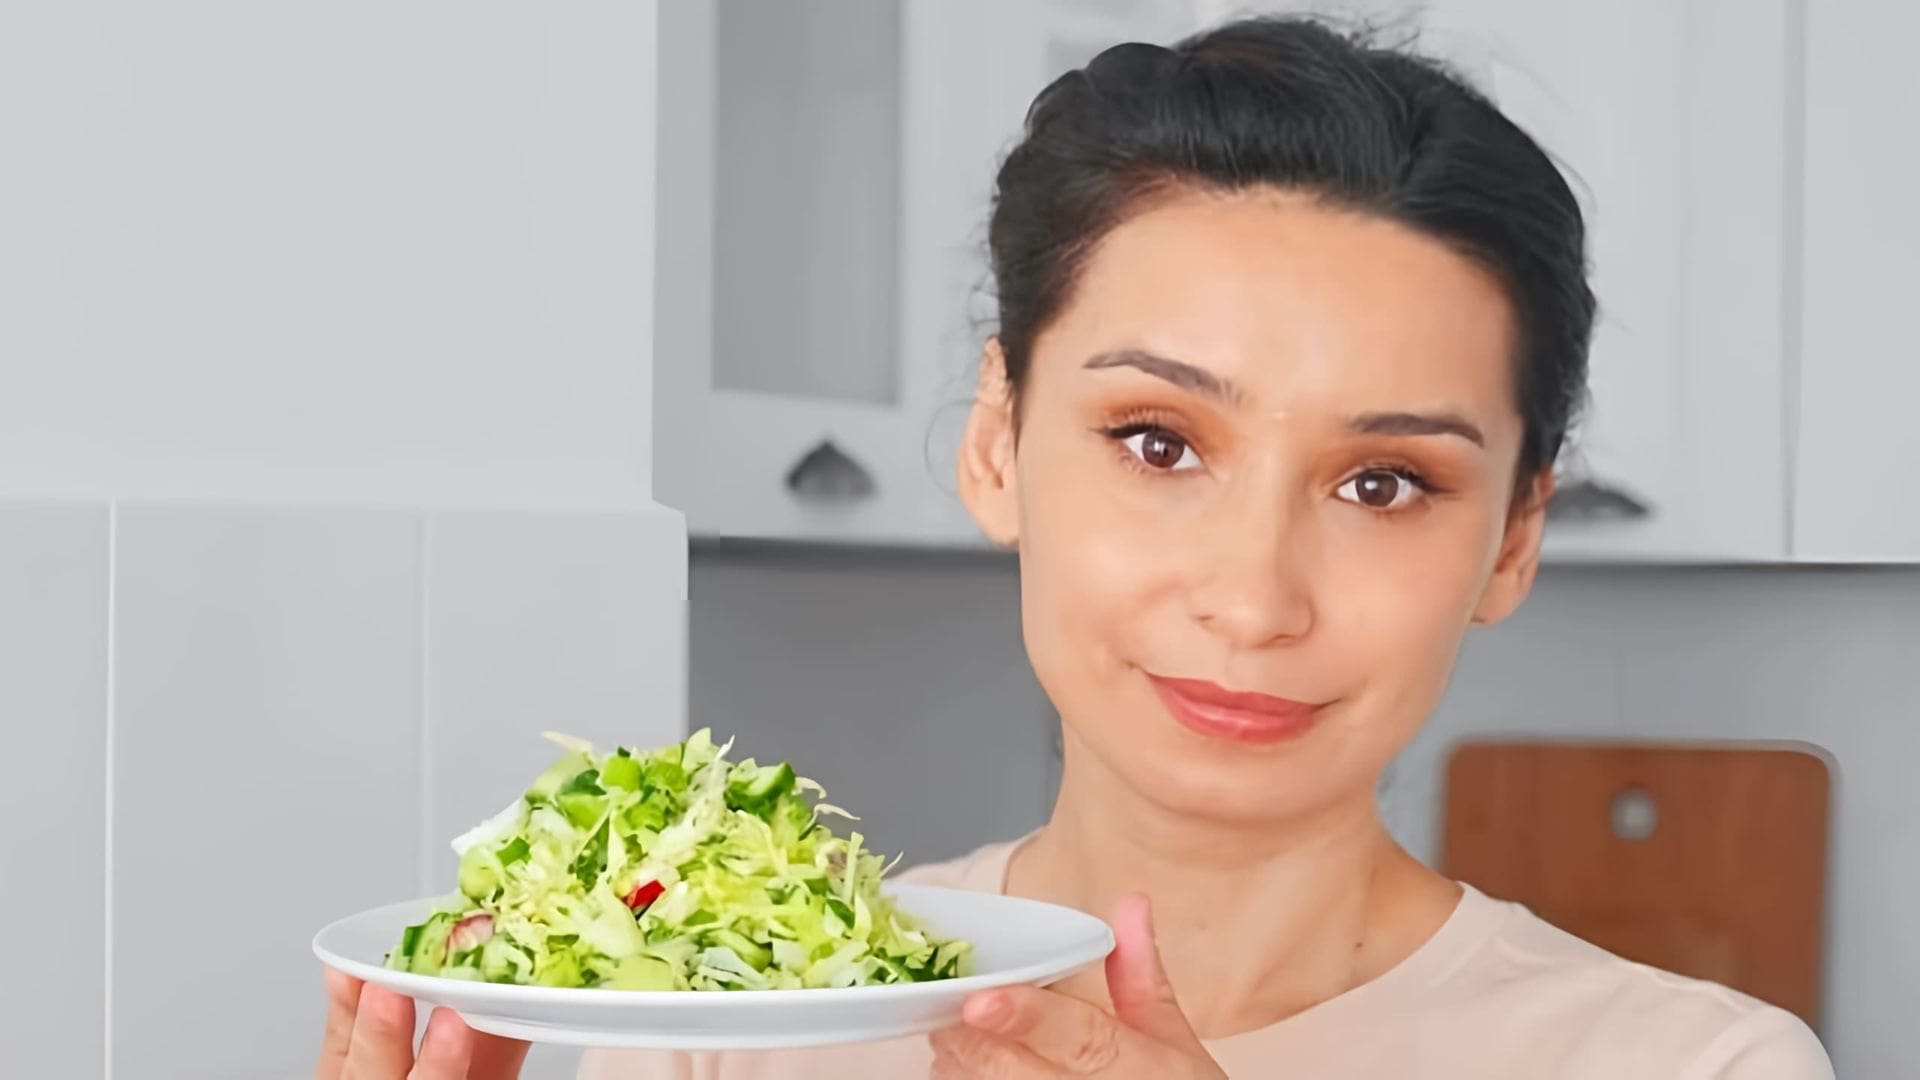 Вкусный, простой и полезный салат из капусты и огурца. Отличный рецепт на каждый день! ❗❗❗ Субтитры доступны на... 